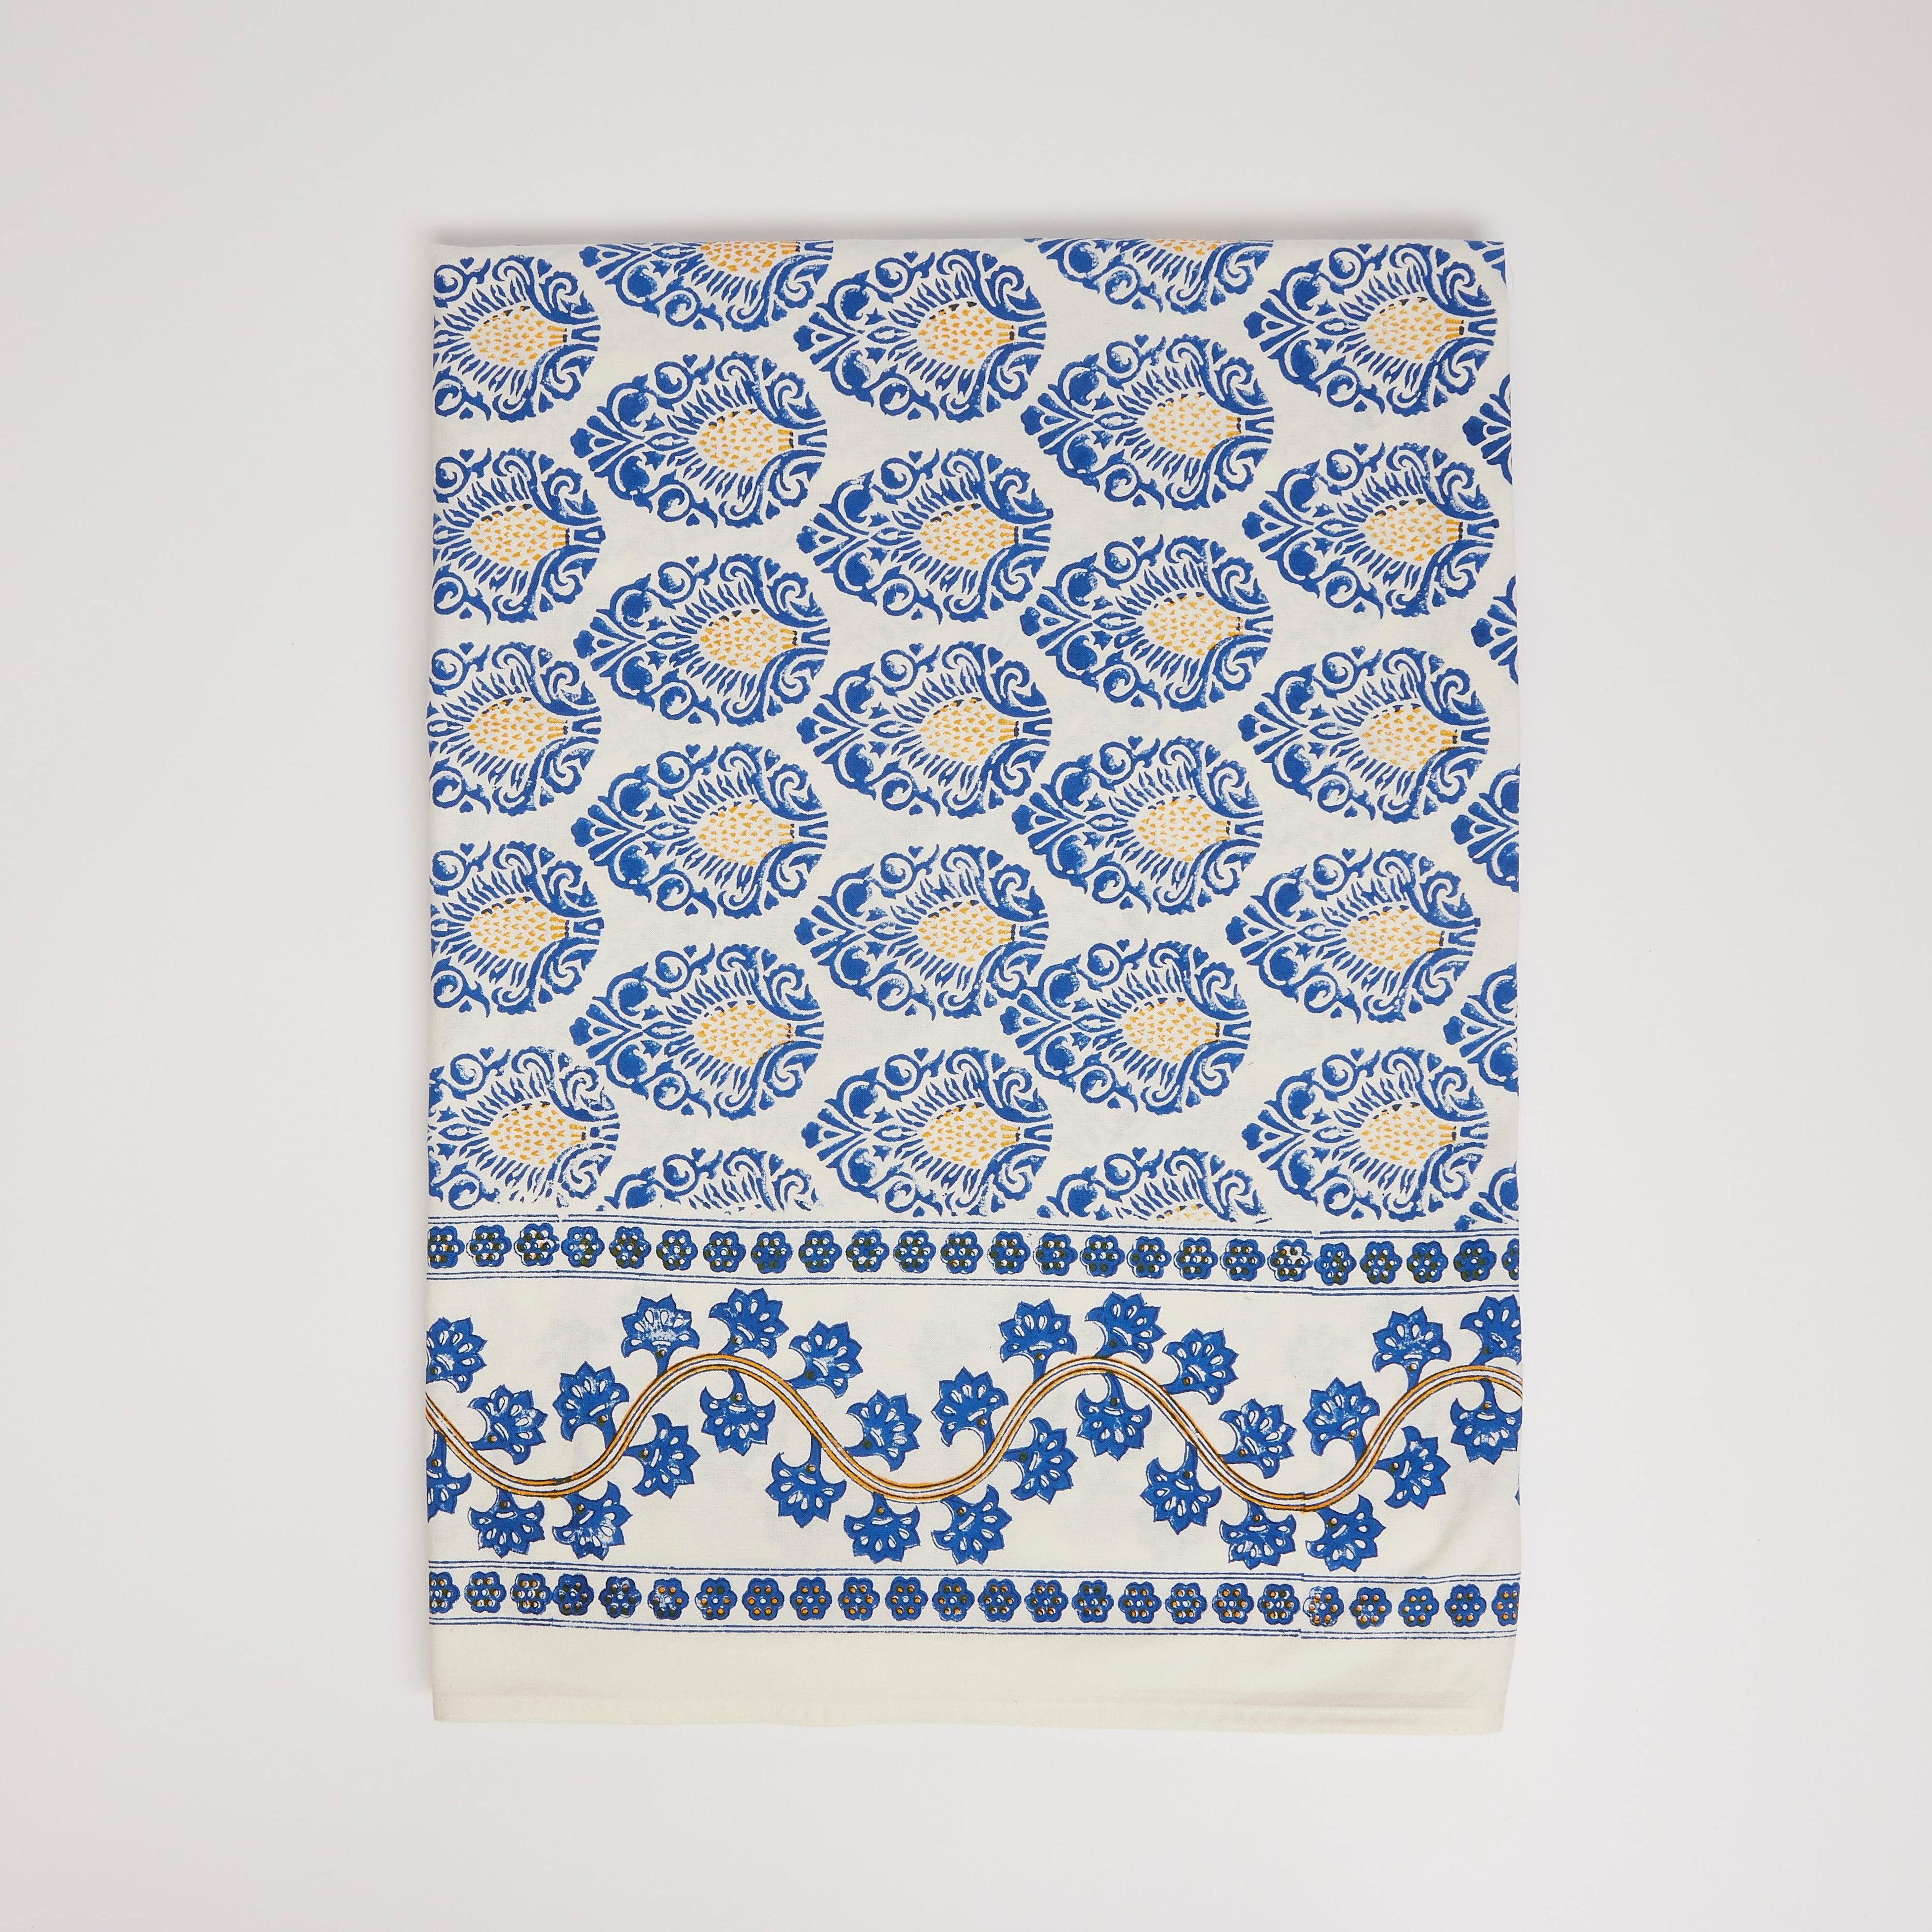 Rent: Bali Blue Tablecloth